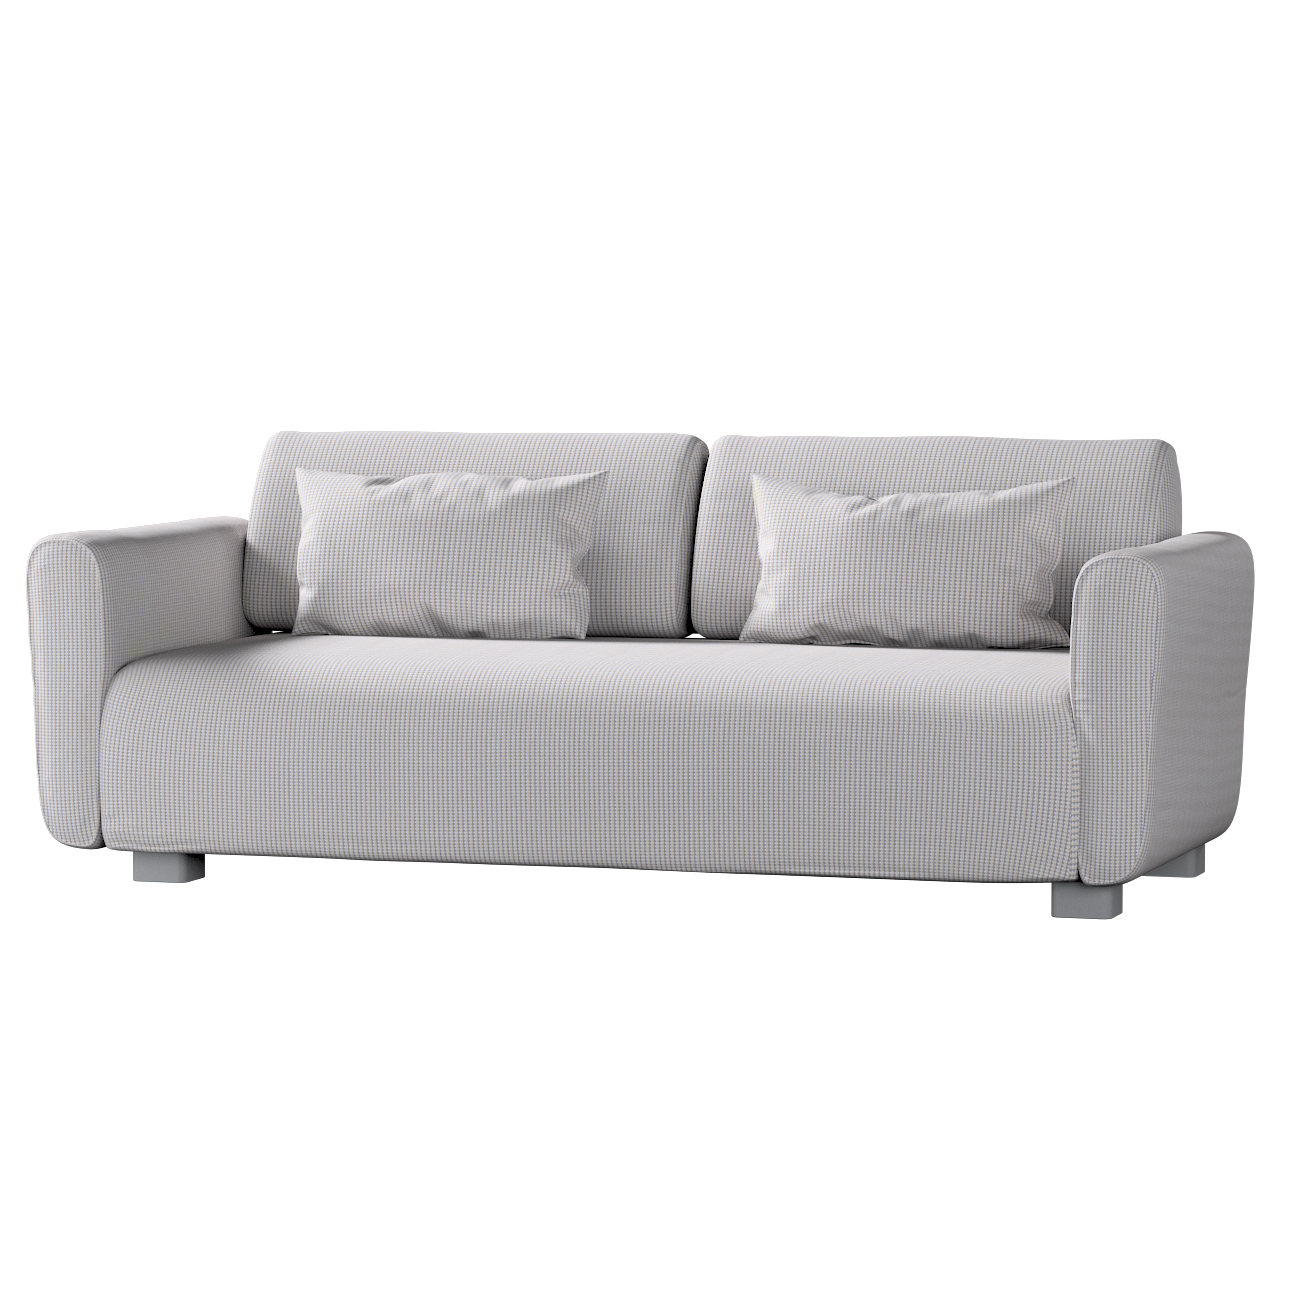 Bezug für Mysinge 2-Sitzer Sofa, beige-blau, Sofabezug Mysinge 2-Sitzer, Li günstig online kaufen